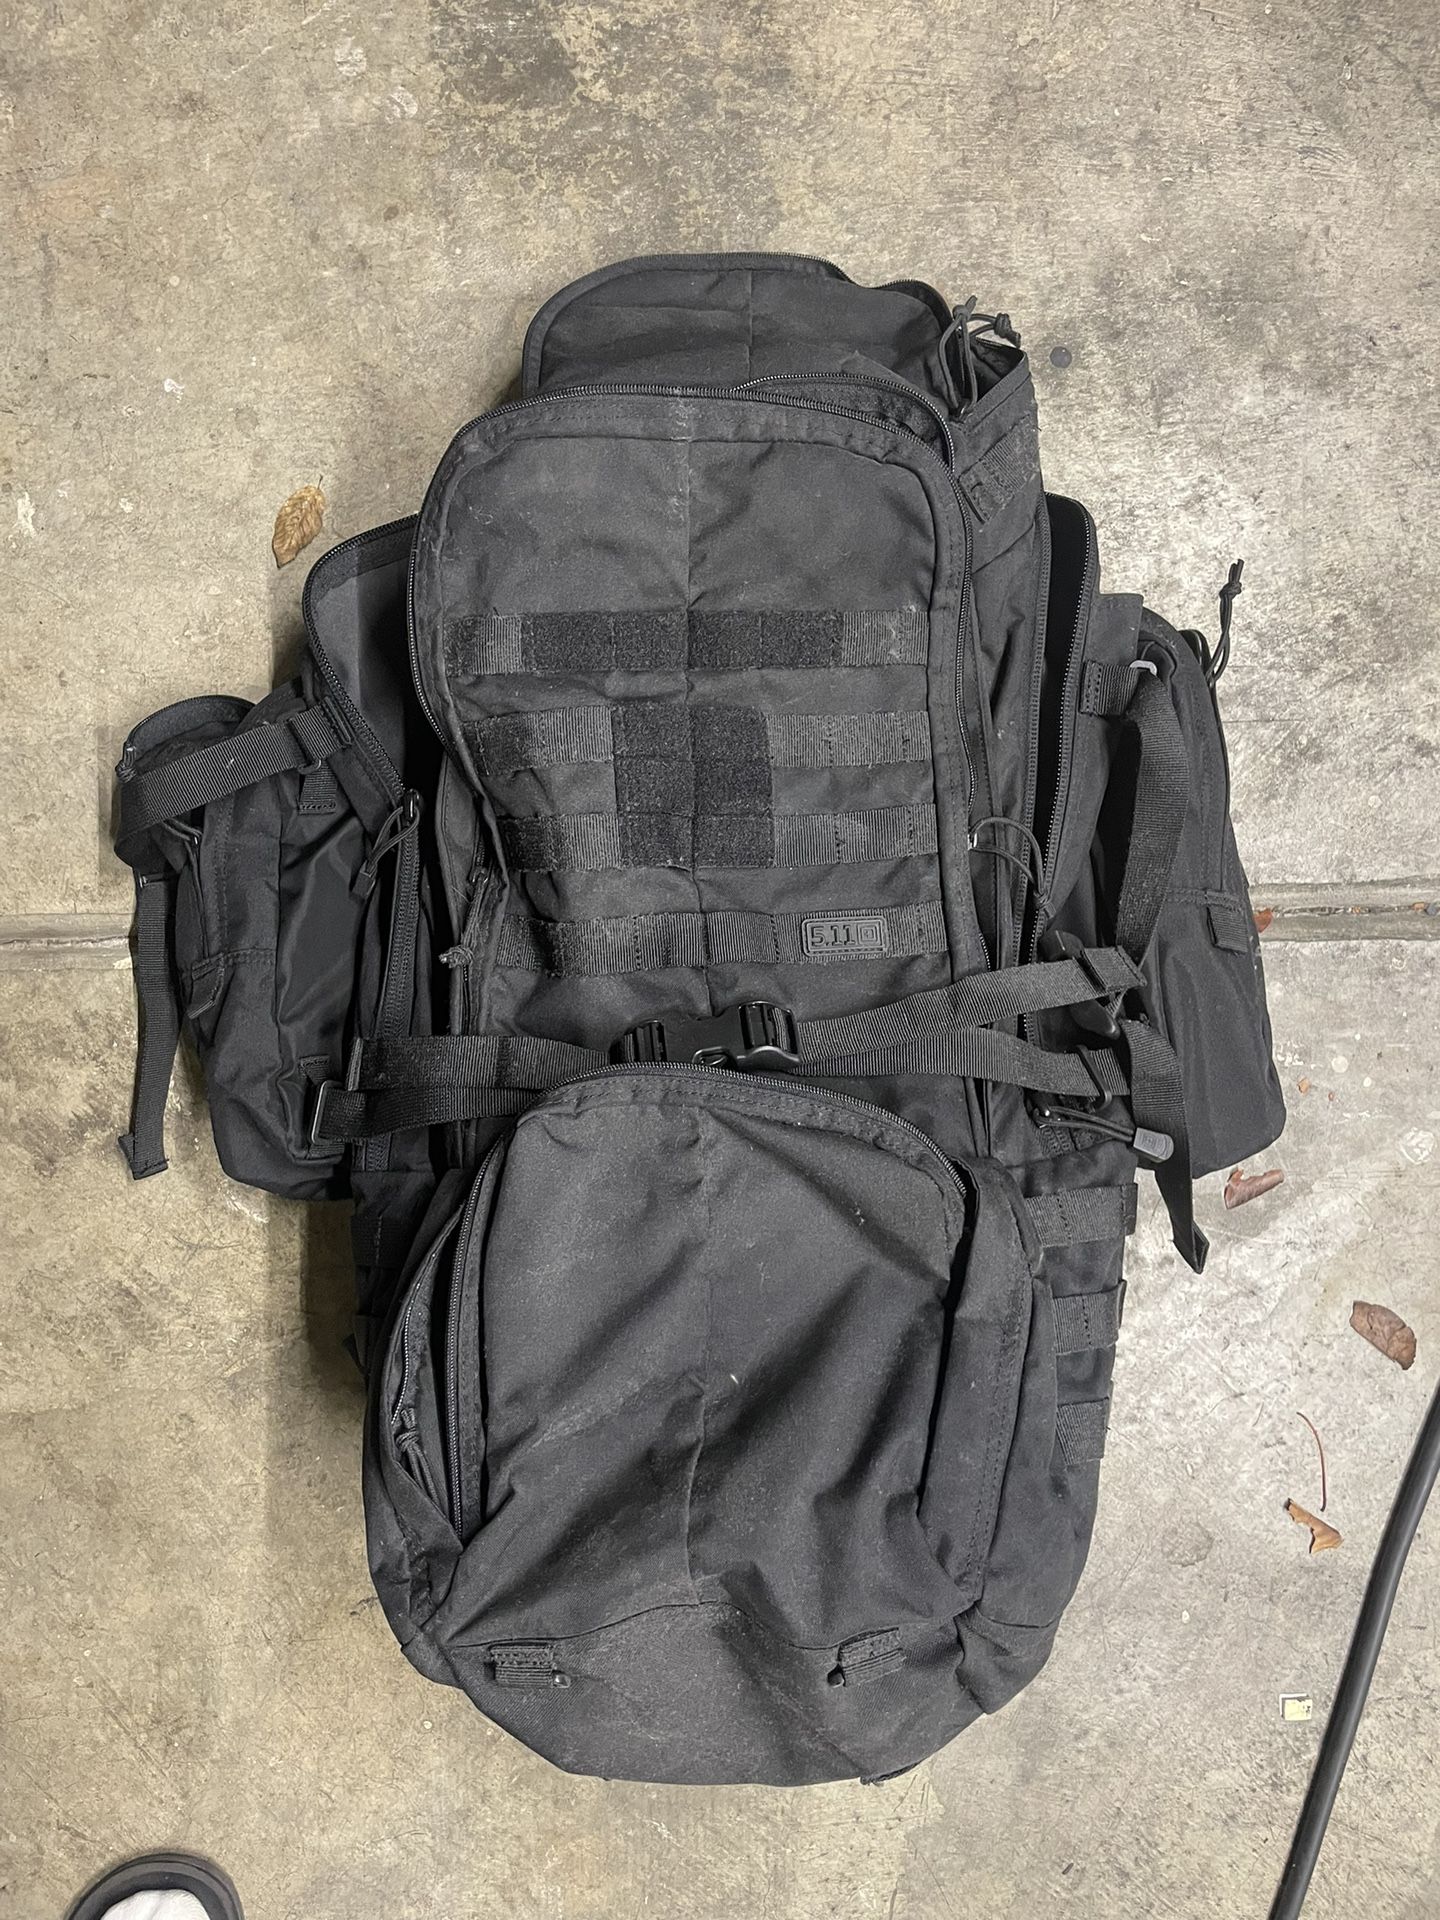 5.11 Backpack